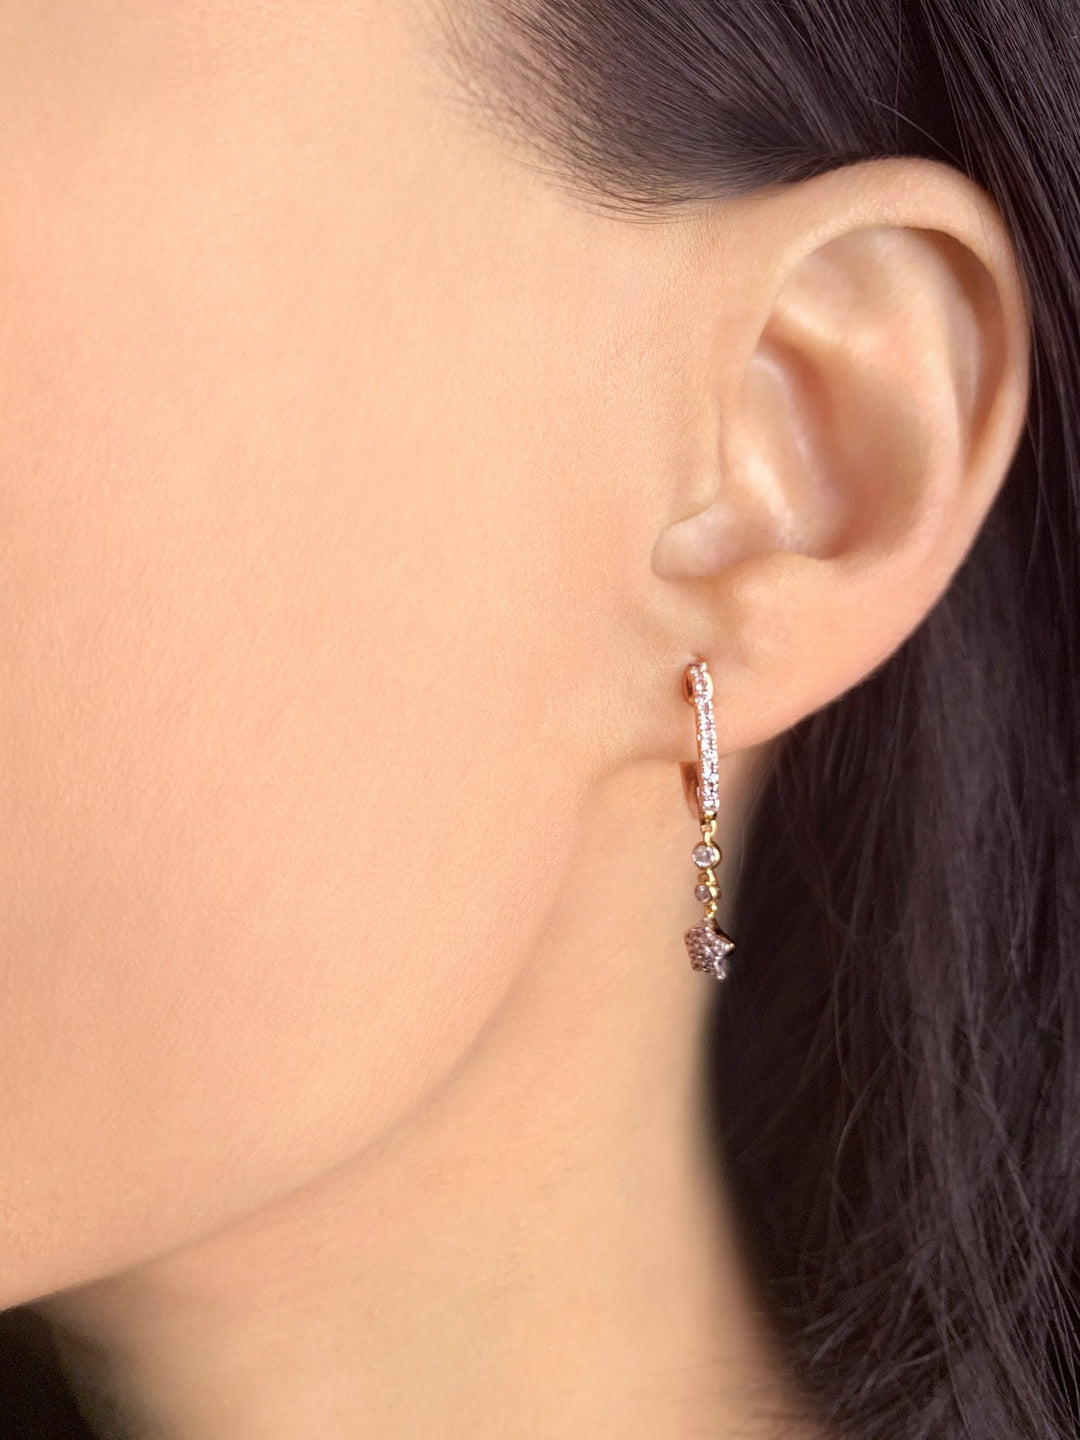 Star Bezel Duo Diamond Hoop Earrings in 14K Yellow Gold Vermeil on Sterling Silver